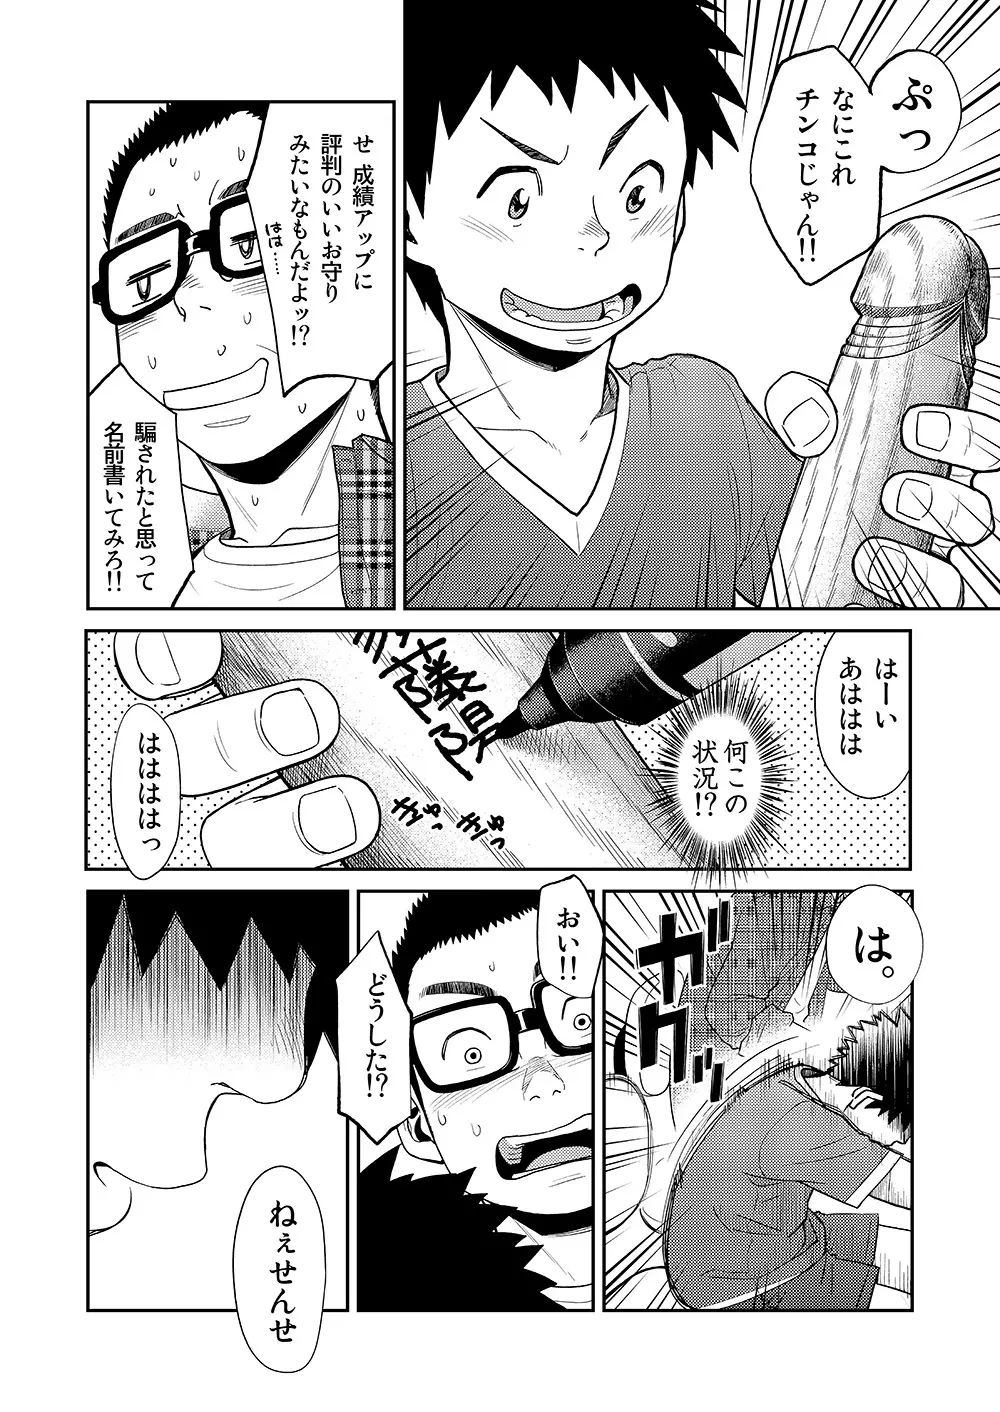 漫画少年ズーム VOL.11 & 12 34ページ